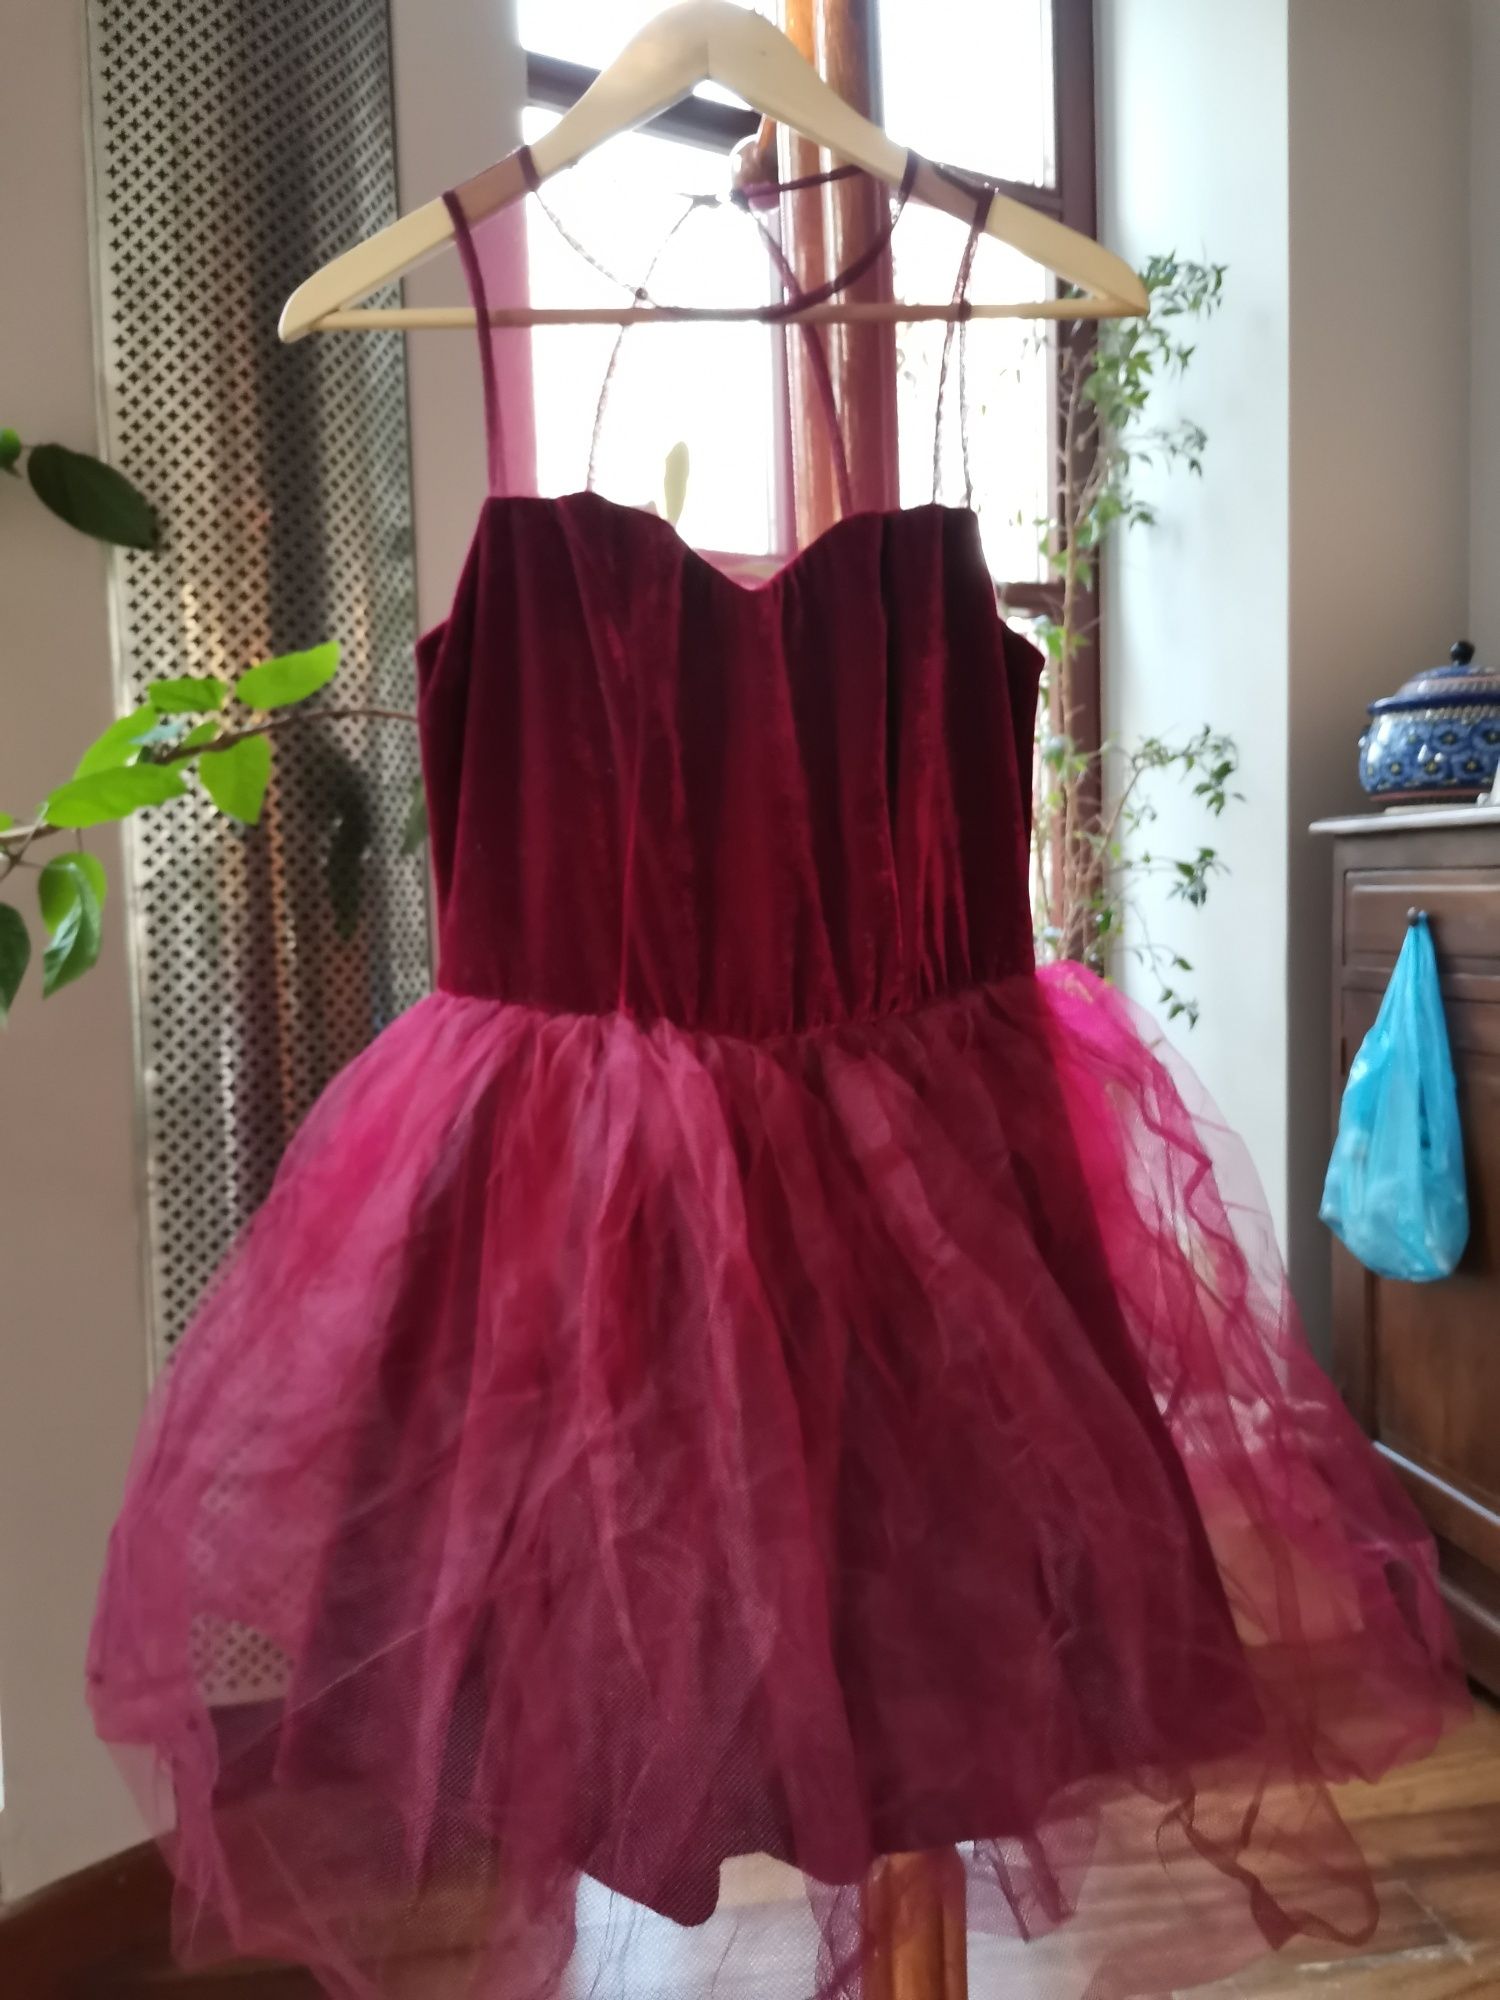 Śliczna bordowa sukienka tiulowa na sylwestra